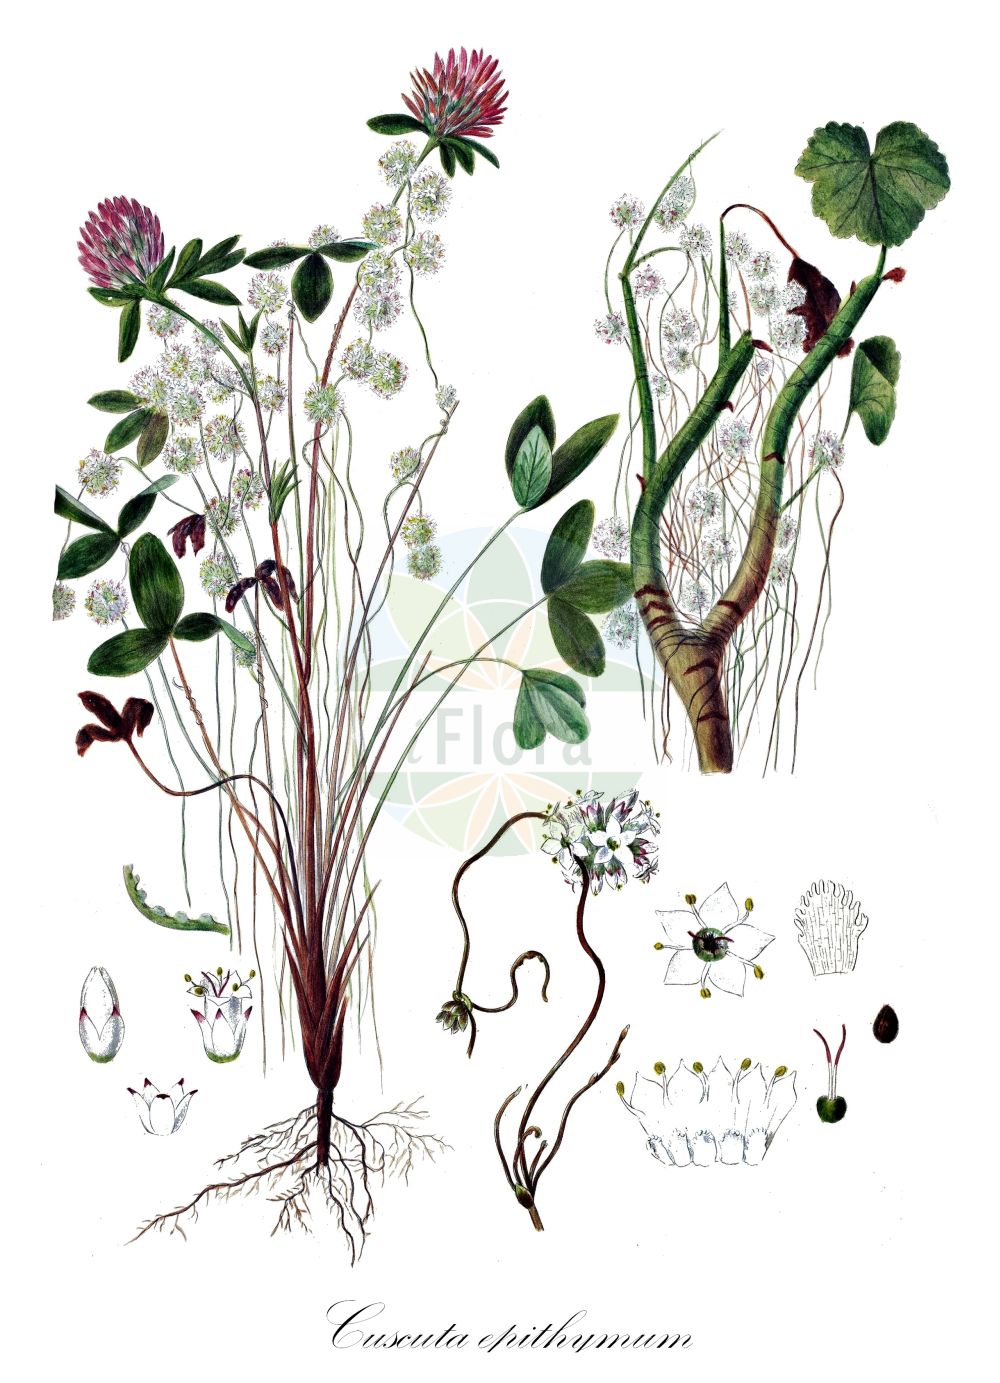 Historische Abbildung von Cuscuta epithymum (Quendel-Seide - Dodder). Das Bild zeigt Blatt, Bluete, Frucht und Same. ---- Historical Drawing of Cuscuta epithymum (Quendel-Seide - Dodder). The image is showing leaf, flower, fruit and seed.(Cuscuta epithymum,Quendel-Seide,Dodder,Cuscuta acutiflora,Cuscuta alba,Cuscuta barbuvea,Cuscuta calliopes,Cuscuta epithymum,Cuscuta godronii,Cuscuta prodanii,Cuscuta stenoloba,Cuscuta subulata,Cuscuta trifolii,Cuscuta zizyphi-loti,Quendel-Seide,Gewoehnliche Quendel-Seide,Klee-Seide,Thymian-Seide,Dodder,Clover Dodder,Common Dodder,Cuscuta,Seide,Dodder,Convolvulaceae,Windengewächse,Bindweed family,Blatt,Bluete,Frucht,Same,leaf,flower,fruit,seed,Oeder (1761-1883))